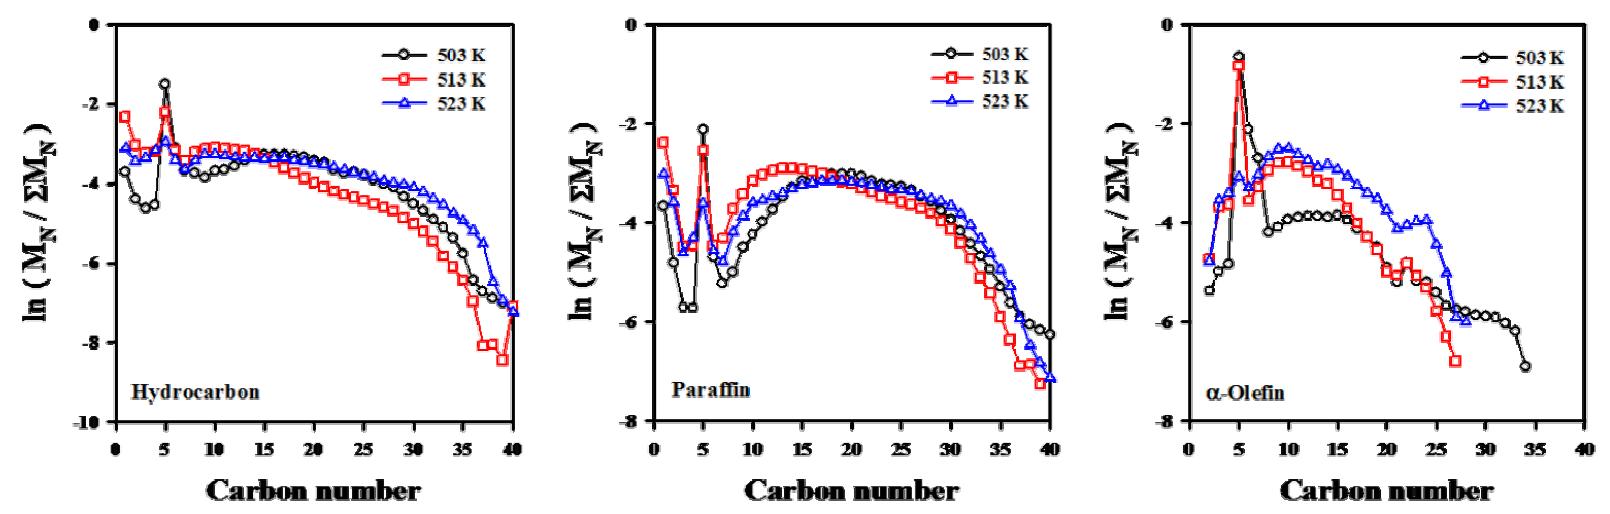 온도에 따른 탄화수소, α-올레핀, 파라핀의 분포변화.